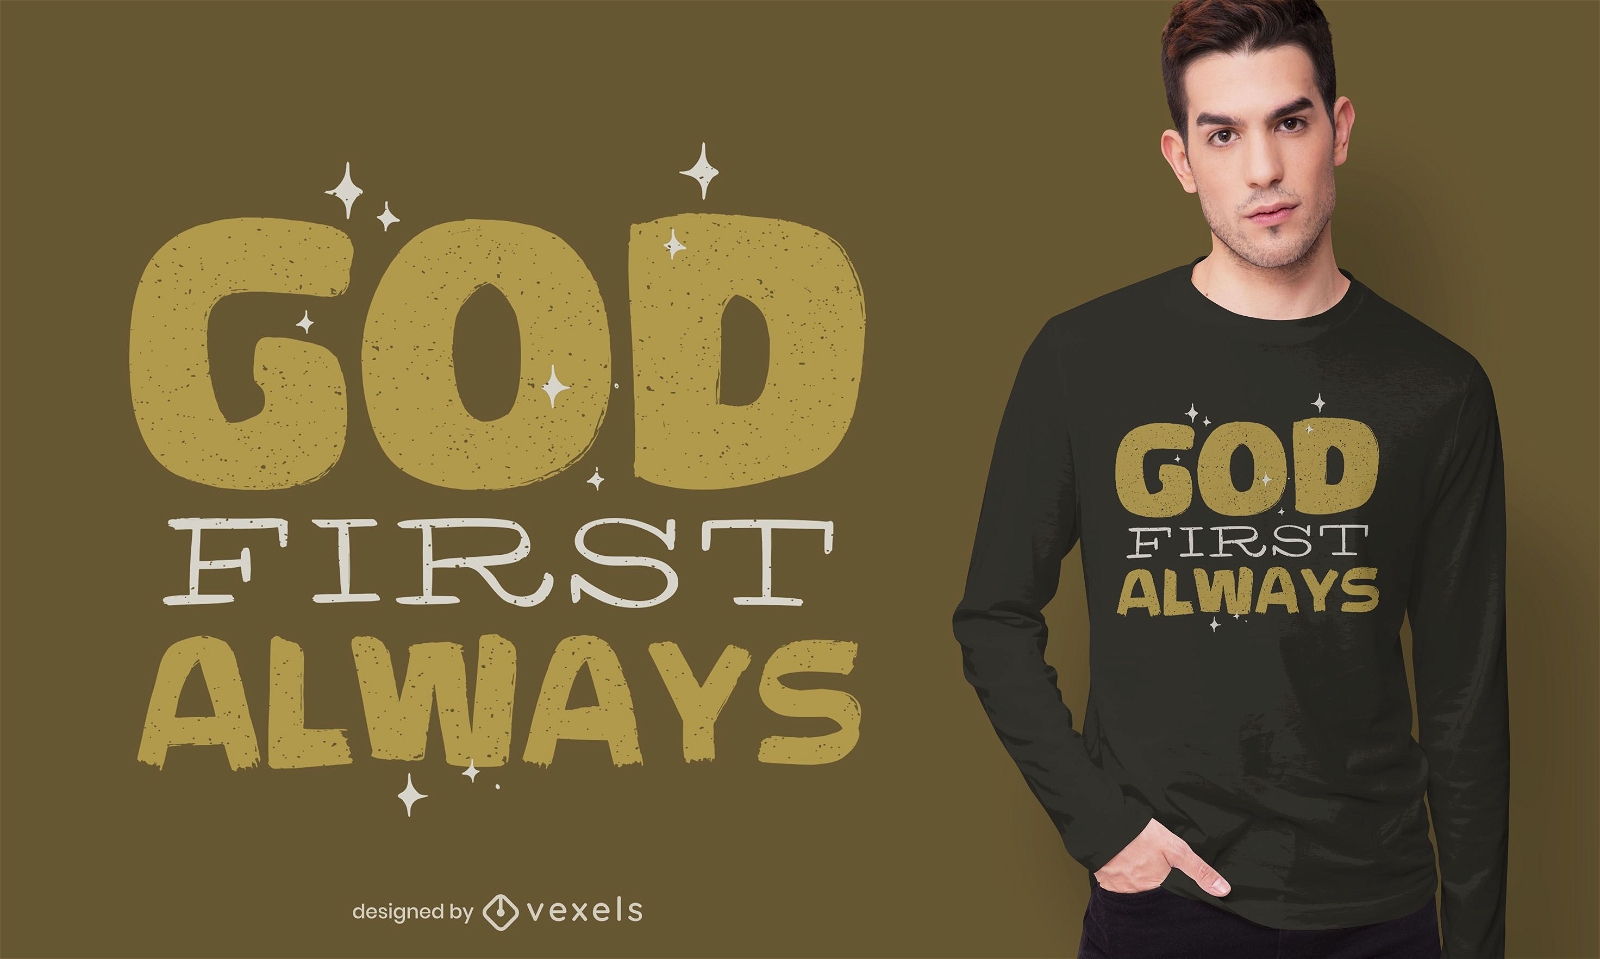 Dios siempre es el primero en dise?o de camiseta.